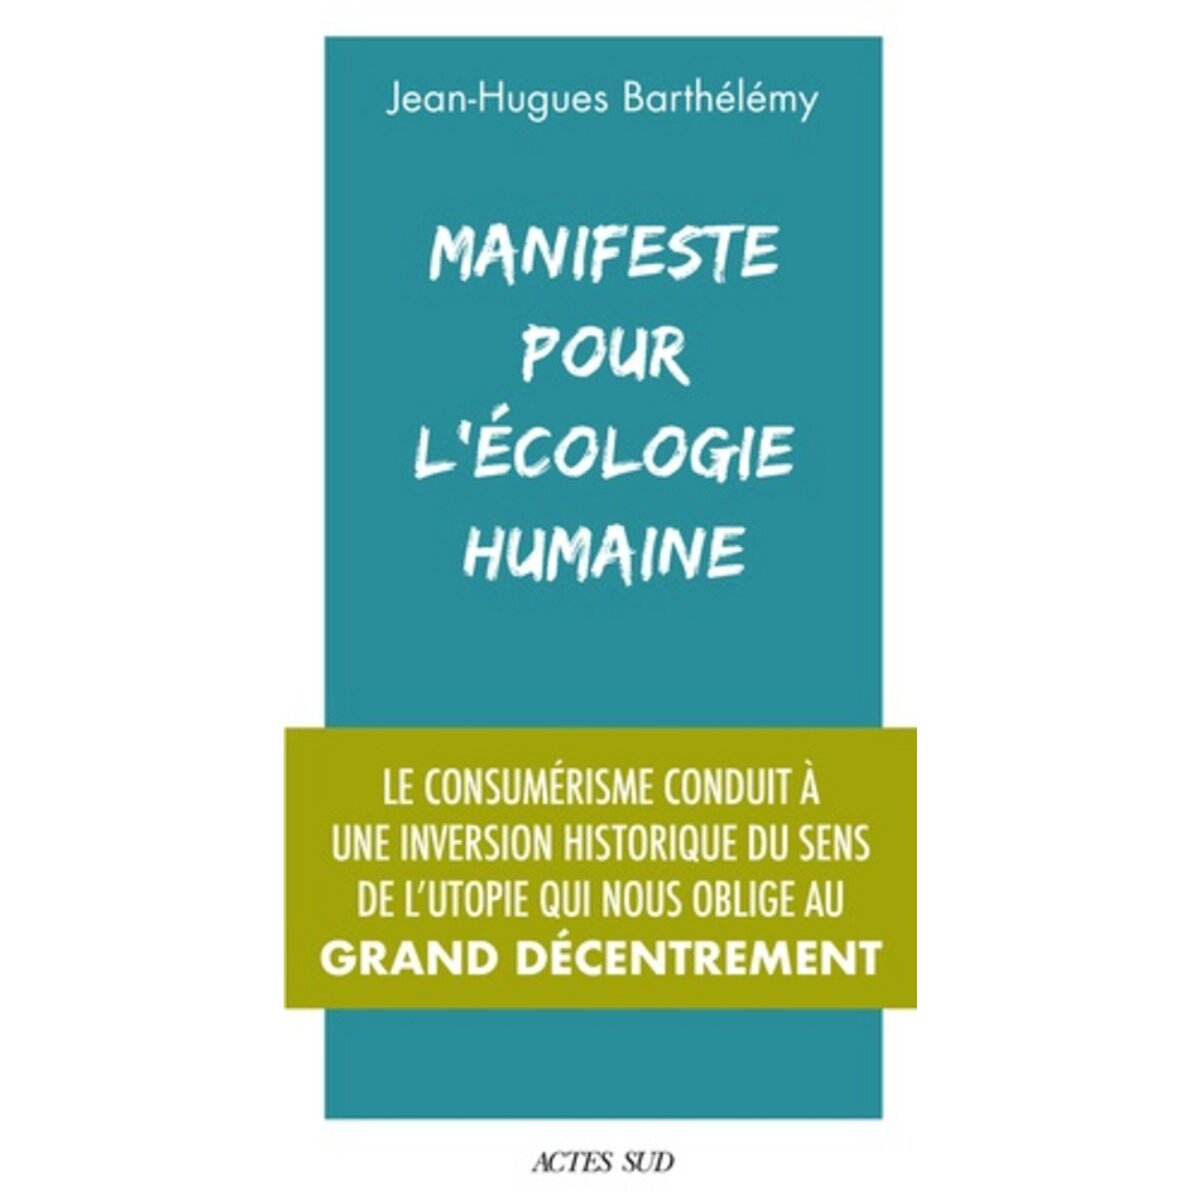  MANIFESTE POUR L'ECOLOGIE HUMAINE, Barthélémy Jean-Hugues